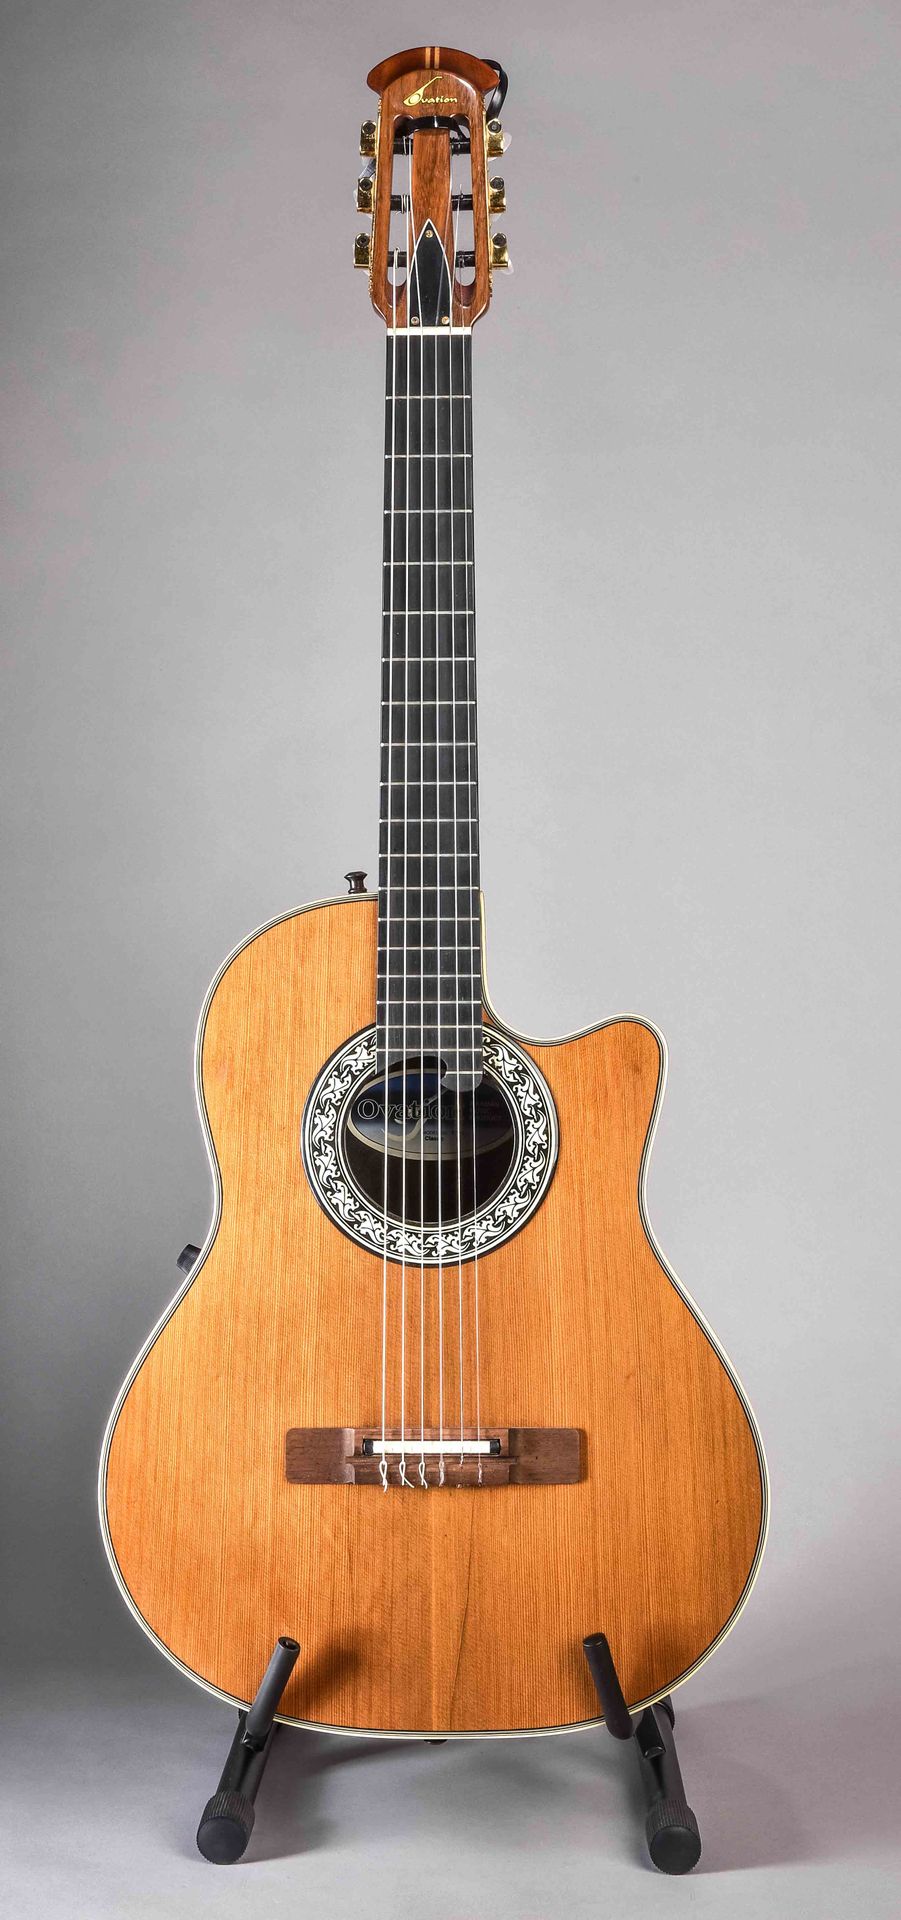 Null E - chitarra, "Ovation 1763", corpo in plastica, lievi danni, crepe lunghez&hellip;